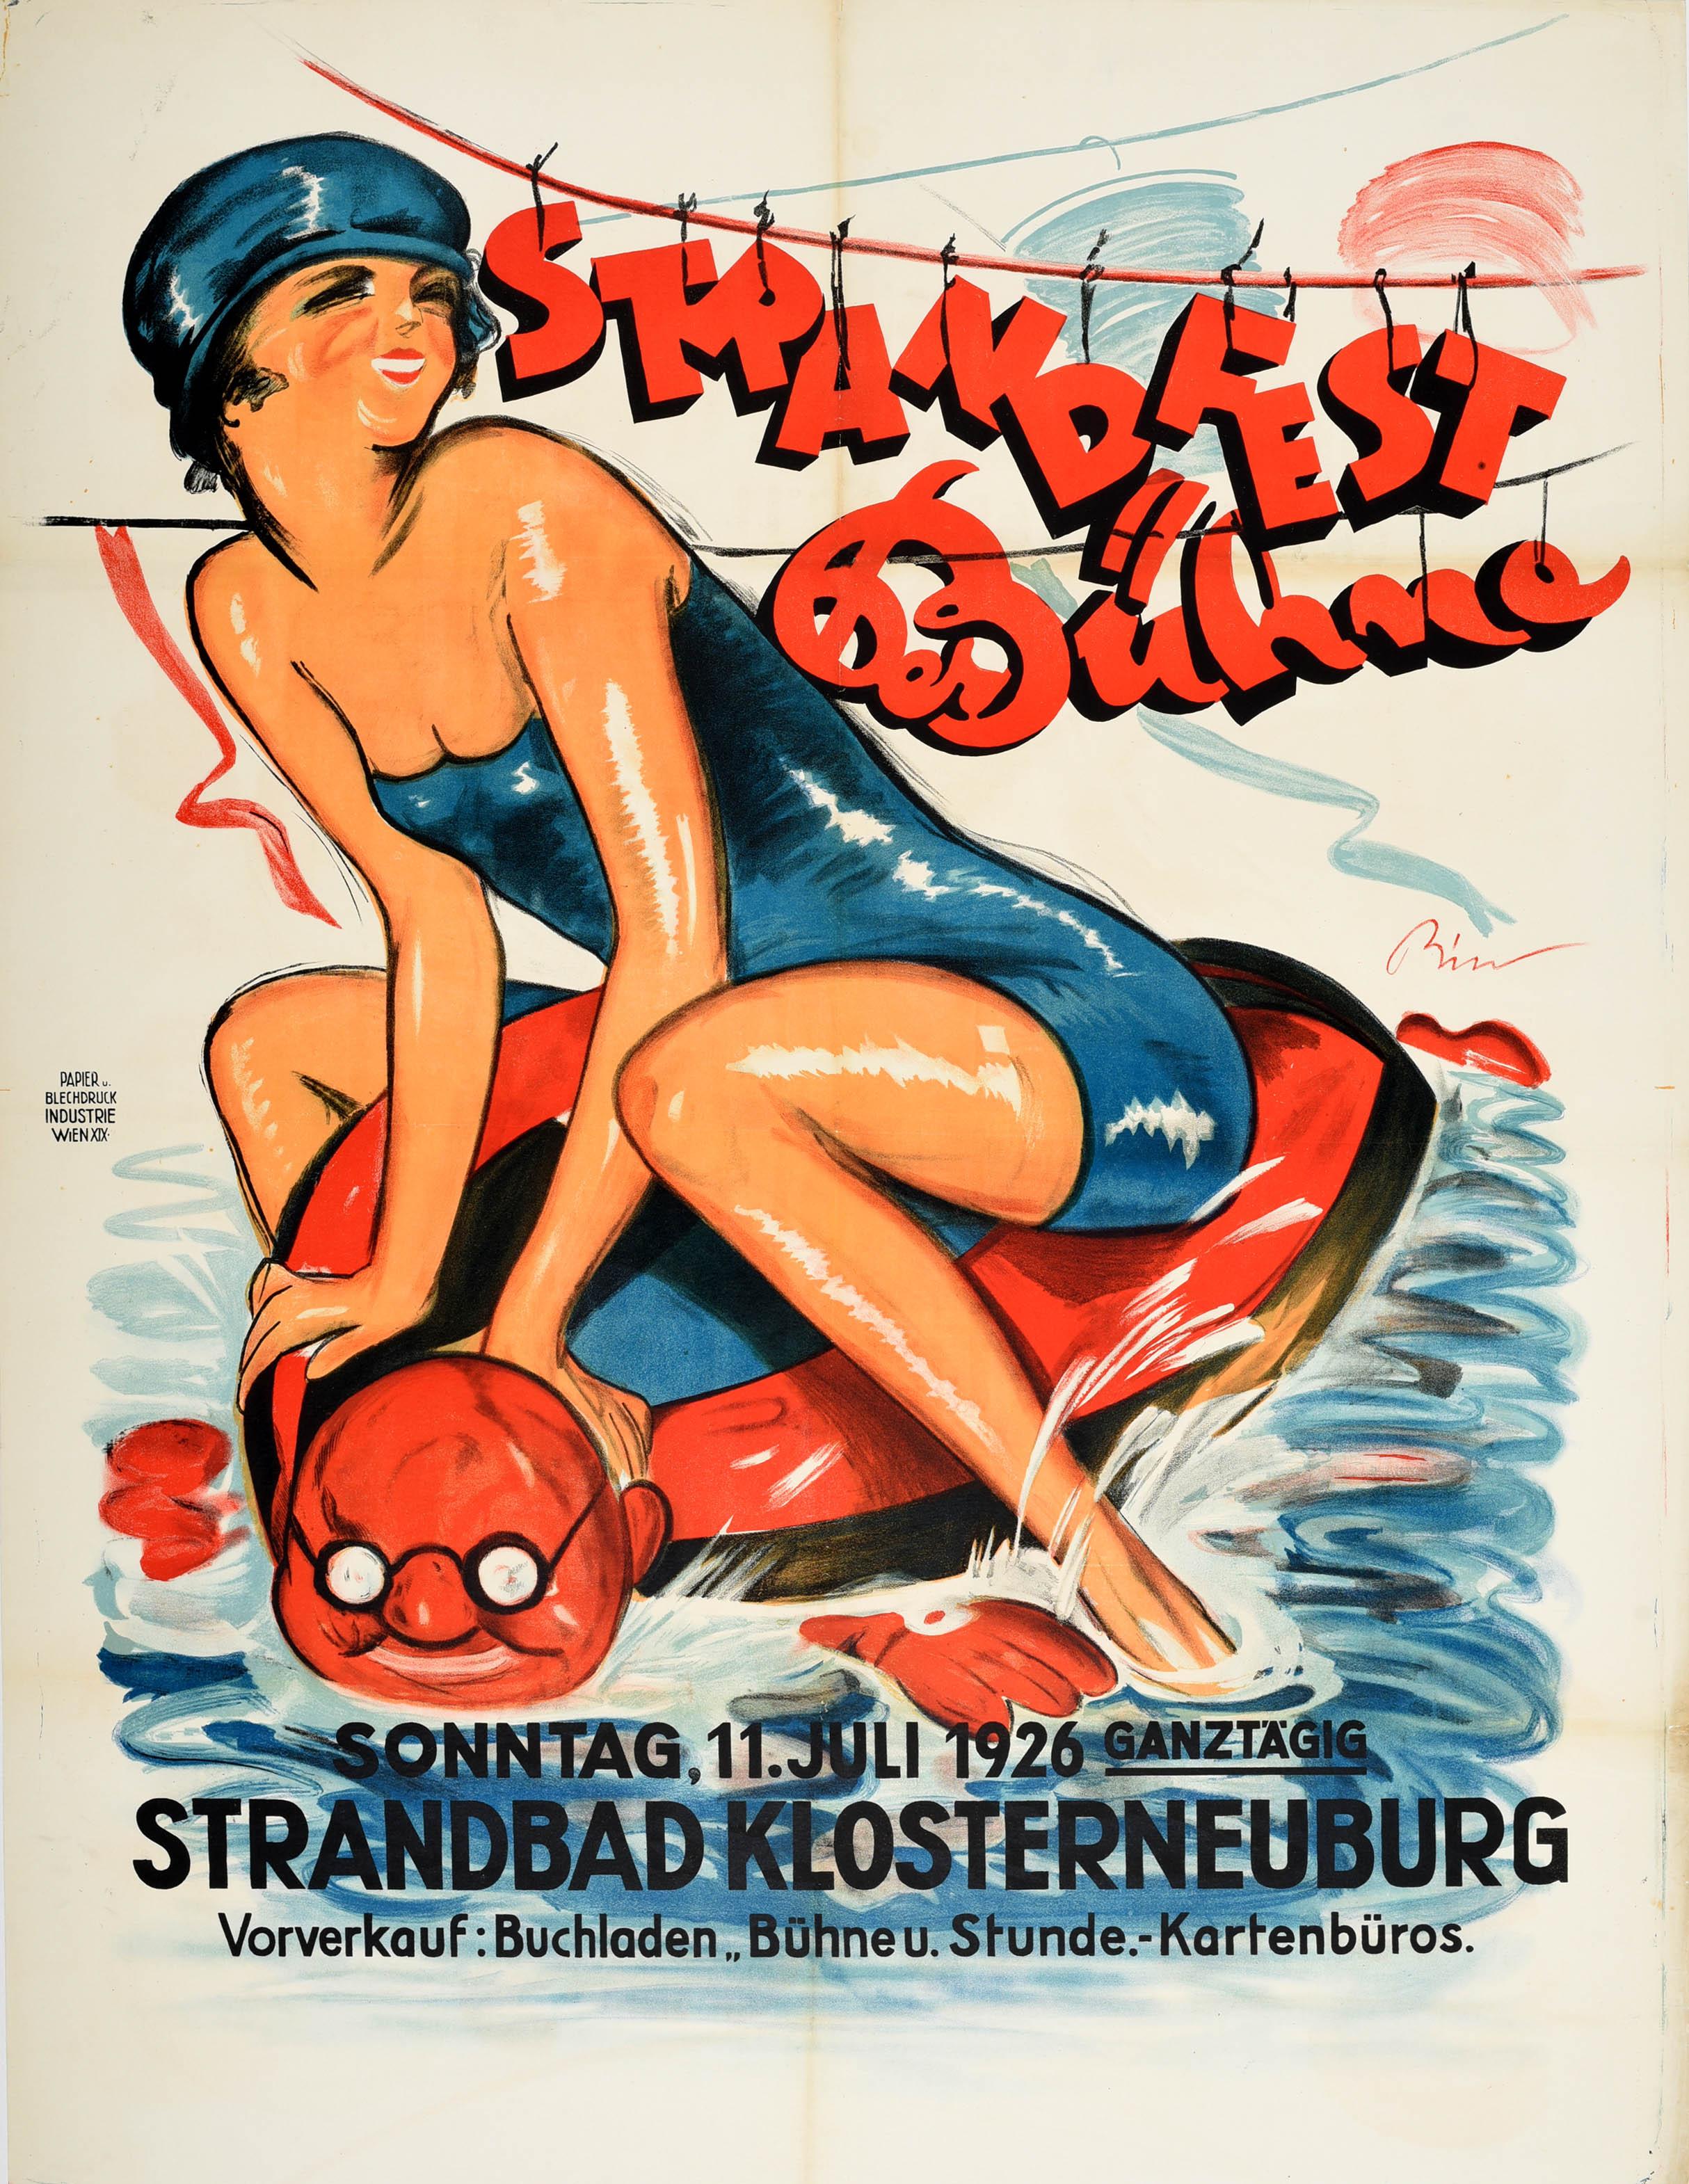 Original Vintage-Reiseplakat, das für das Strandfest Buhne am Sonntag, den 11. Juli 1926 im Strandbad Klosterneuburg wirbt. Das Plakat zeigt eine lächelnde Dame in einem modischen Badeanzug und einer Kappe, die auf einem aufblasbaren Ring in Form